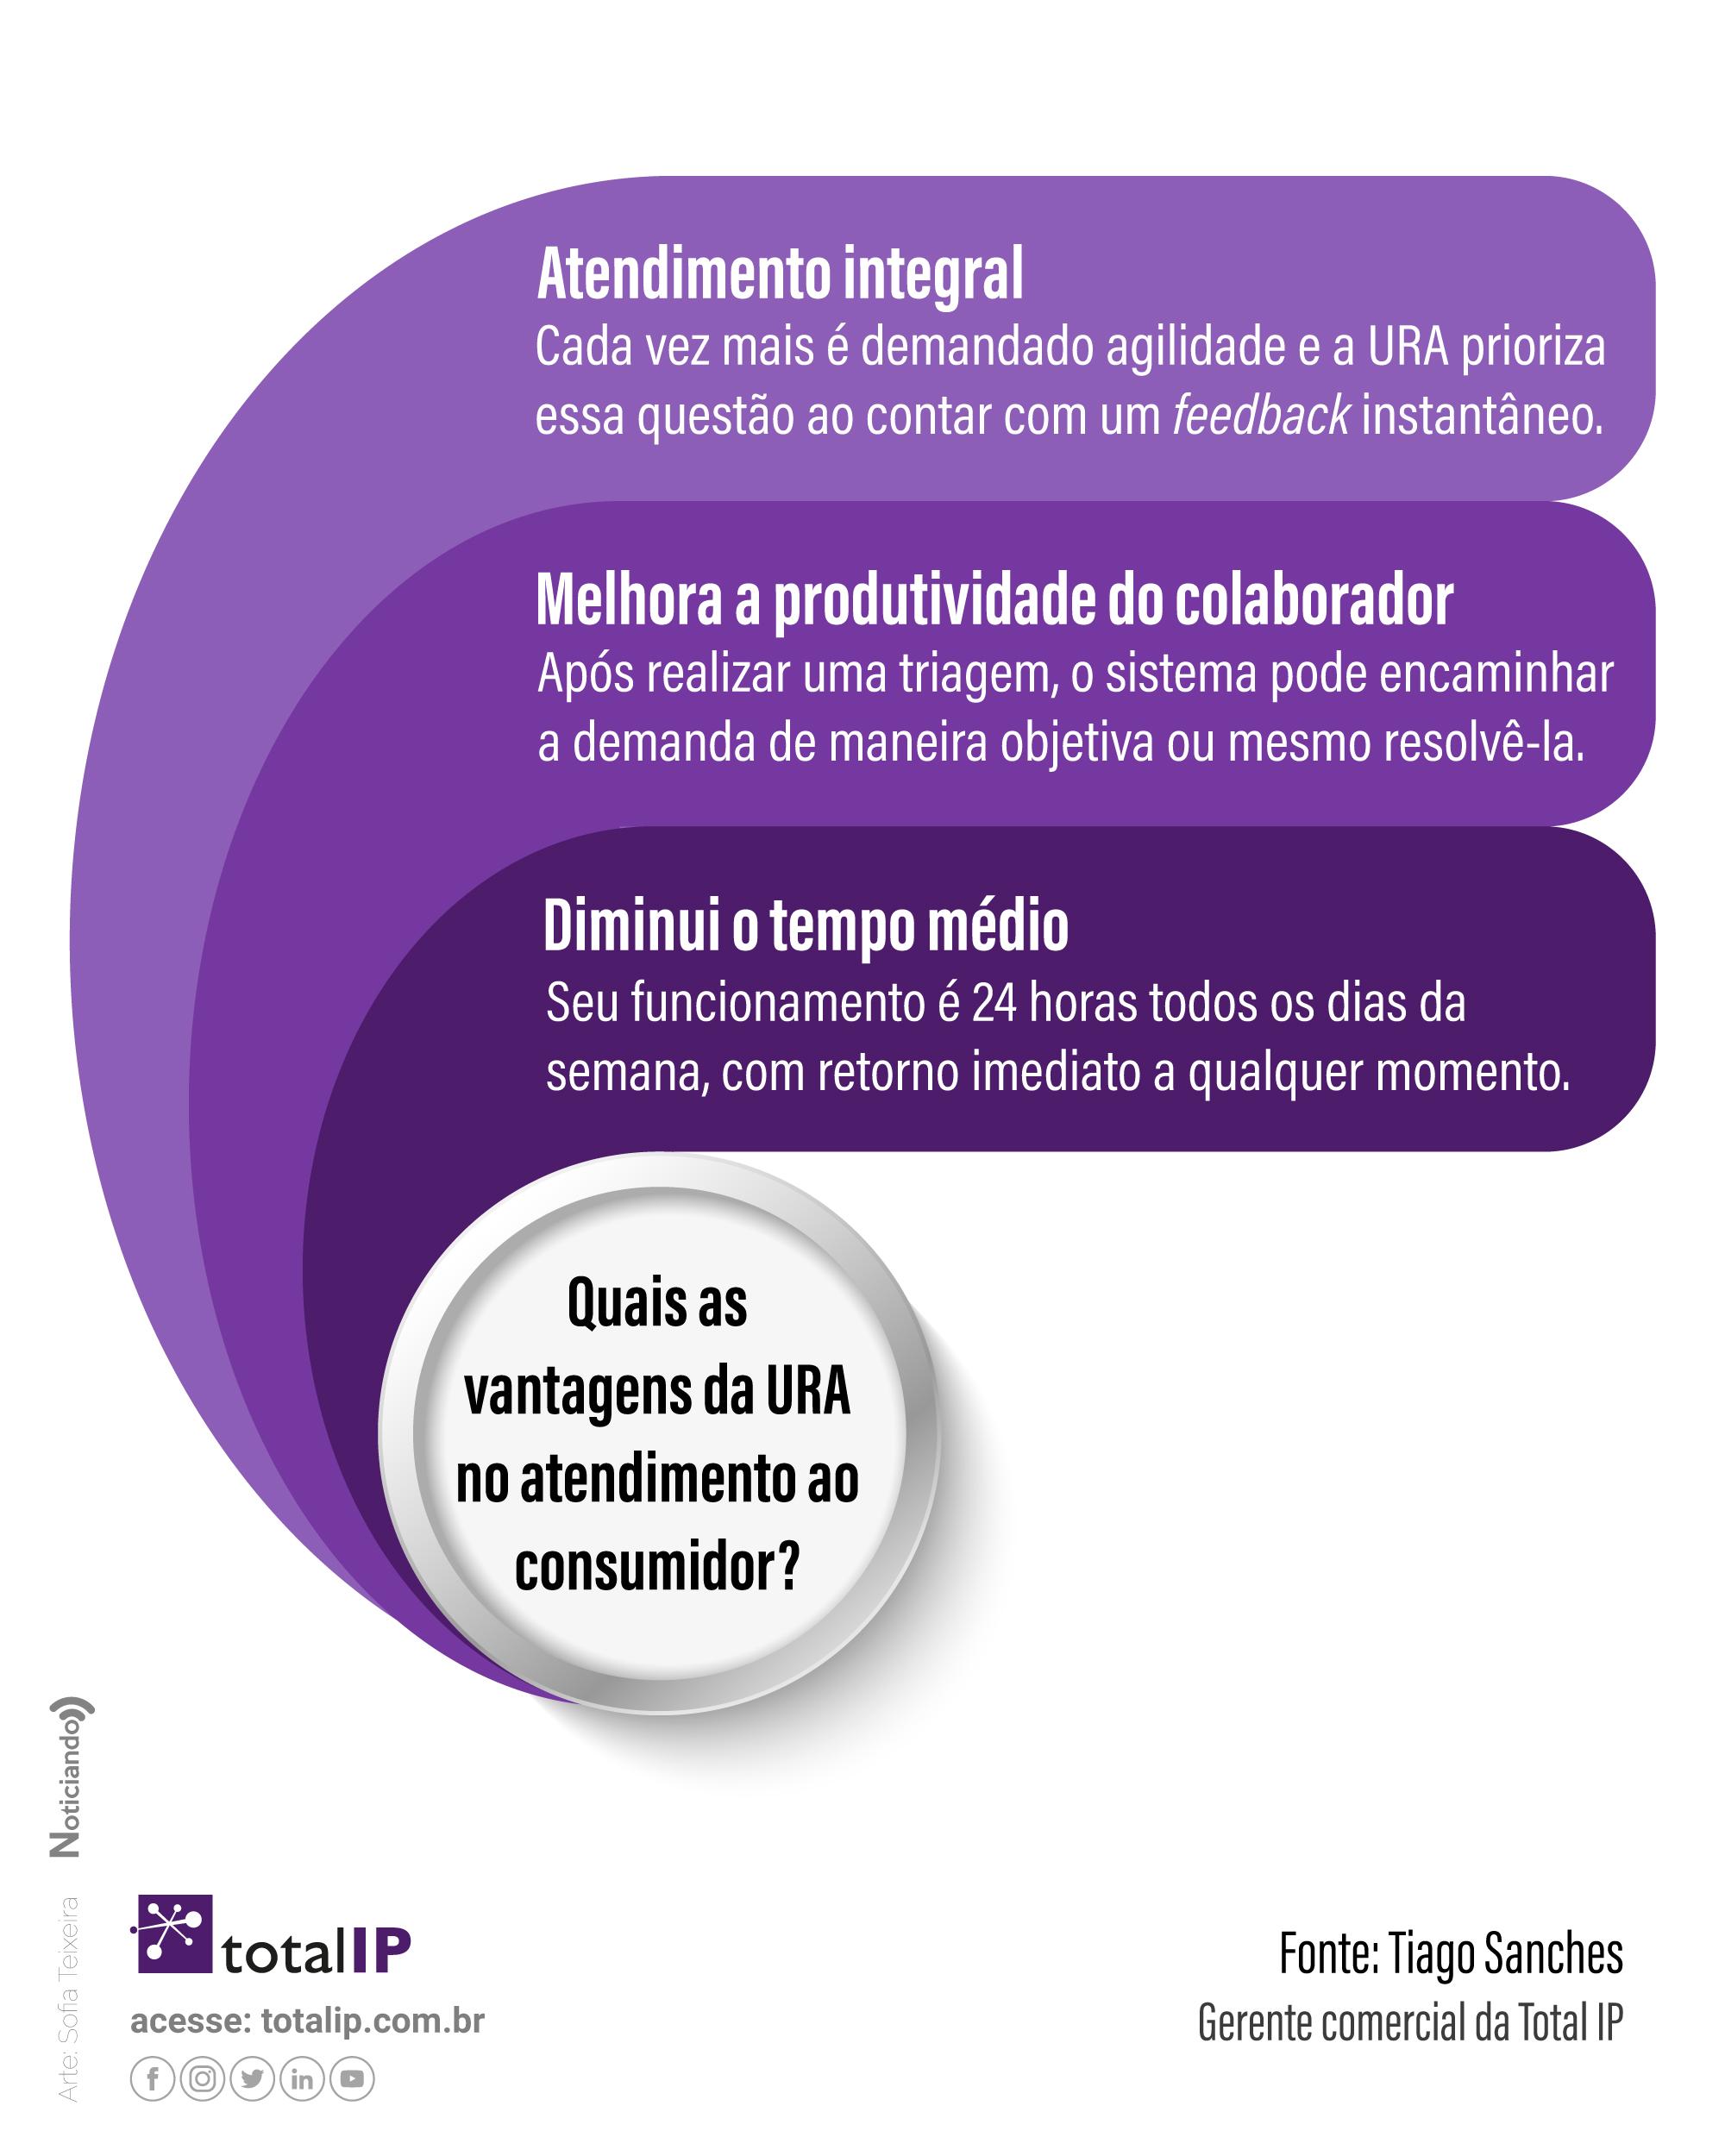 Infográfico mostrando quais as vantagens da URA no atendimento ao consumidor